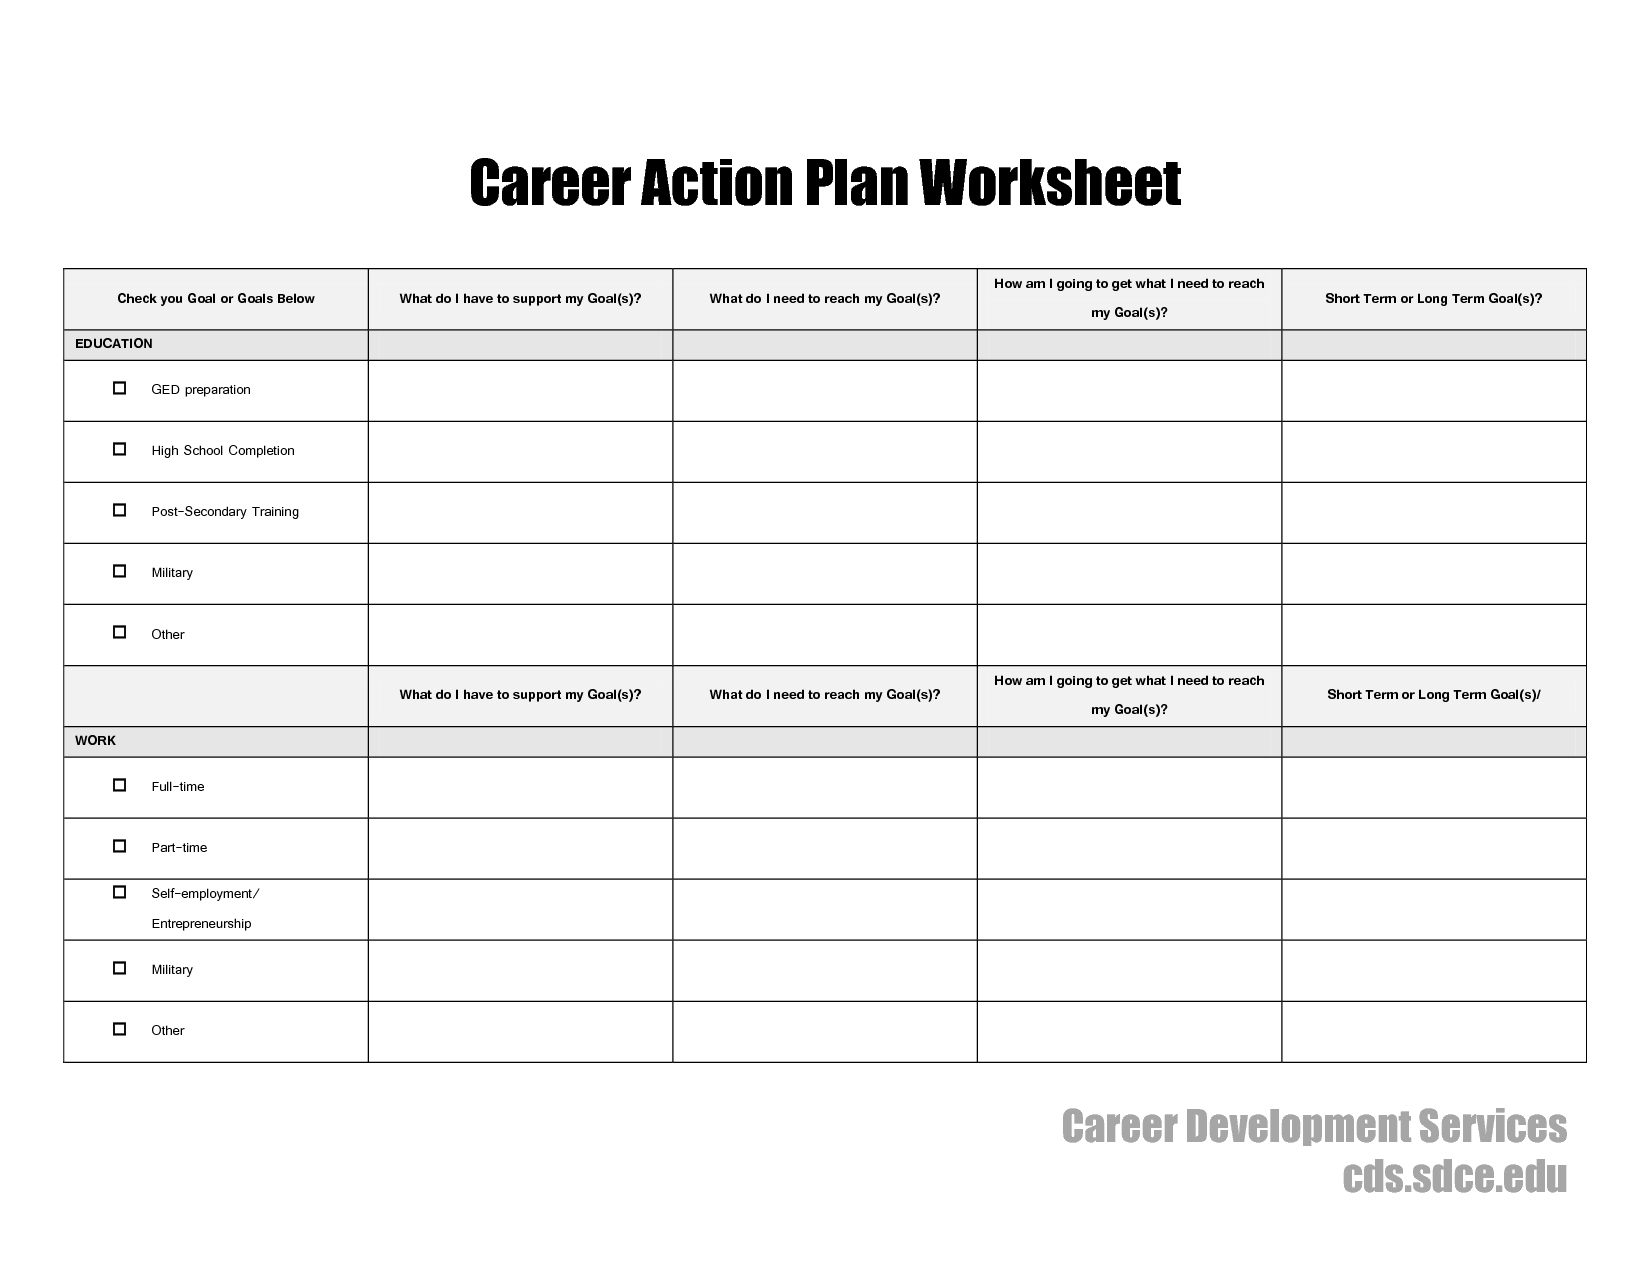 Career Action Plan Worksheet Image